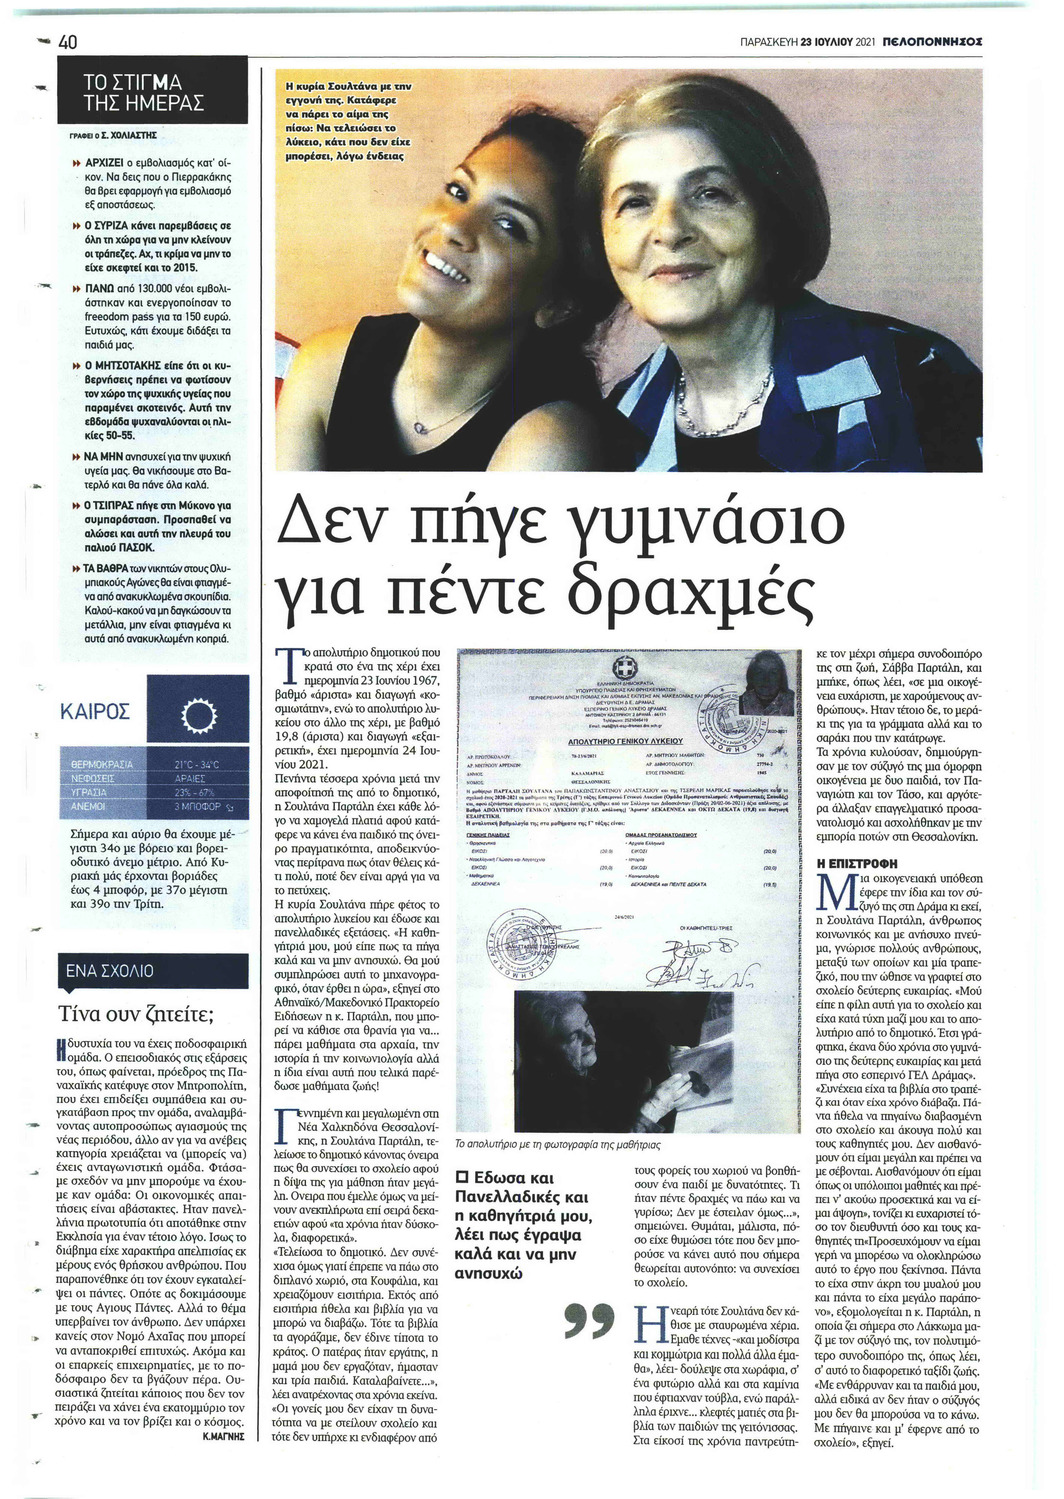 Οπισθόφυλλο εφημερίδας Πελοπόννησος